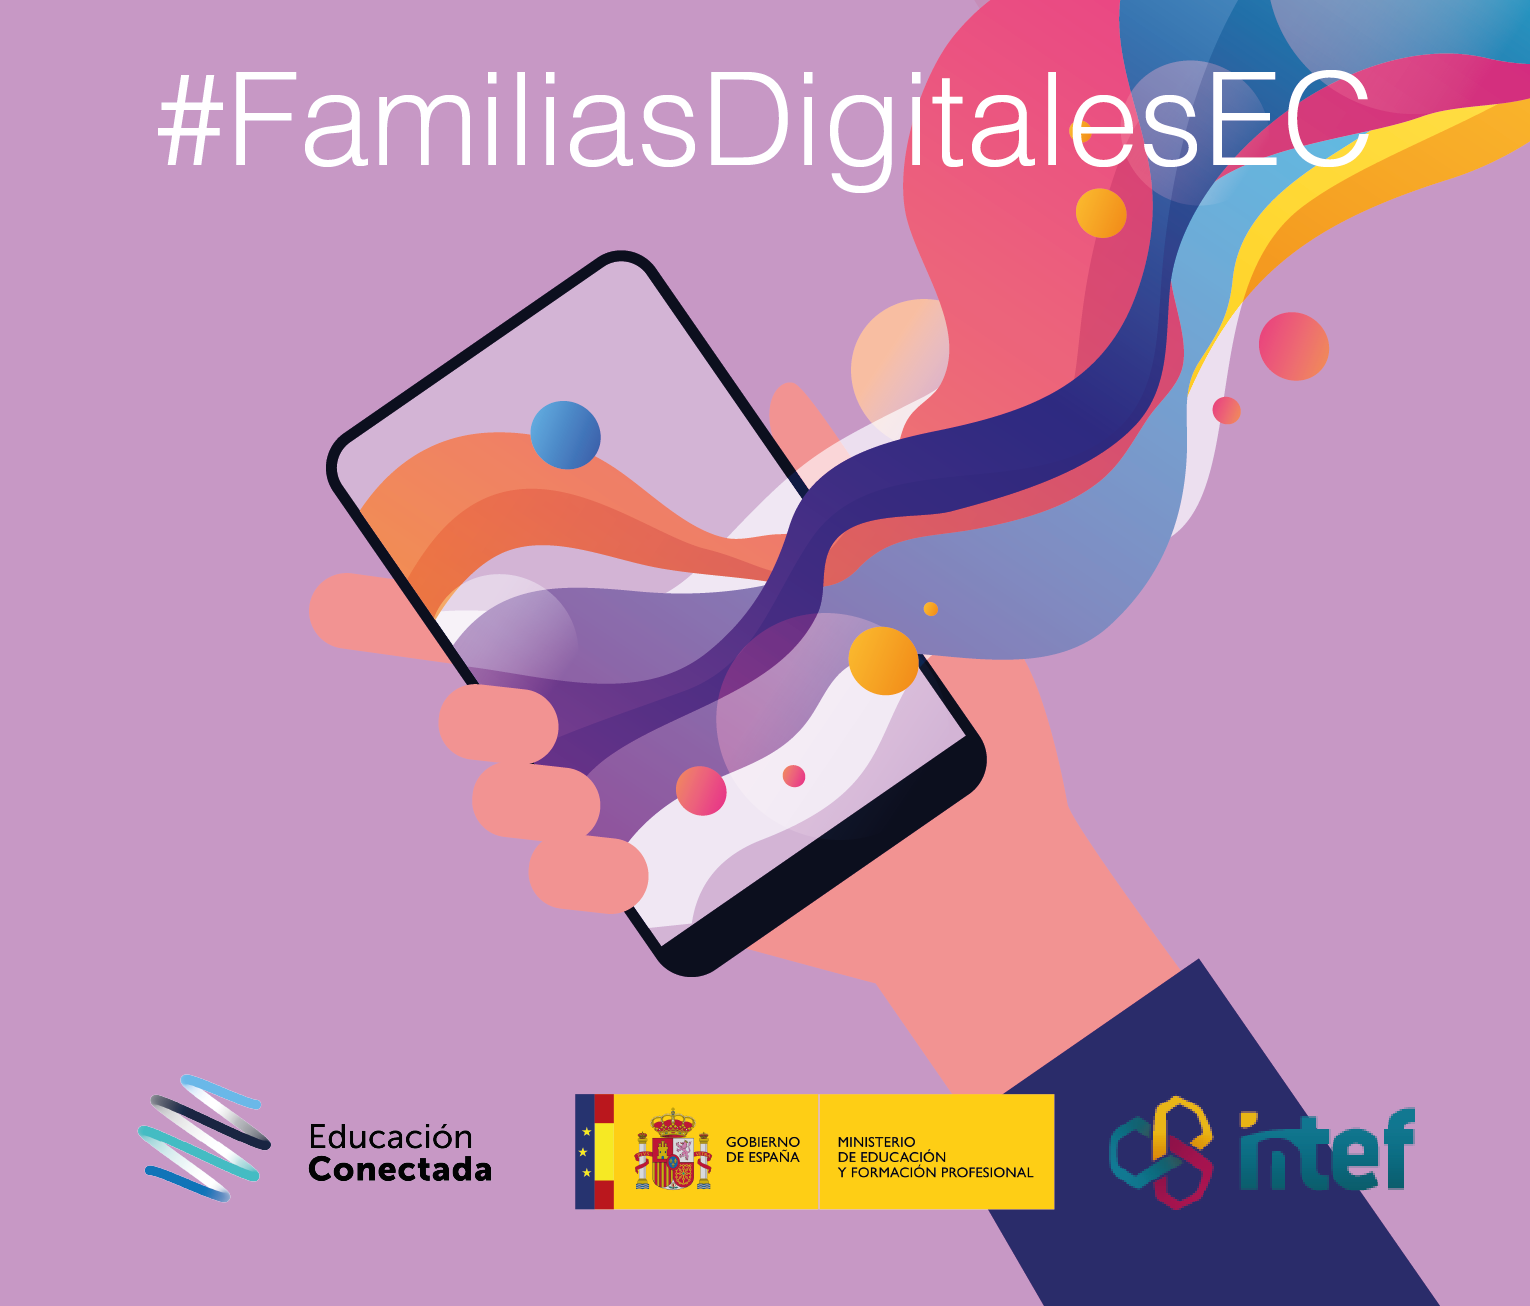 Competencias digitales en la familia: creación de contenidos digitales (básico) FamiliasDig5